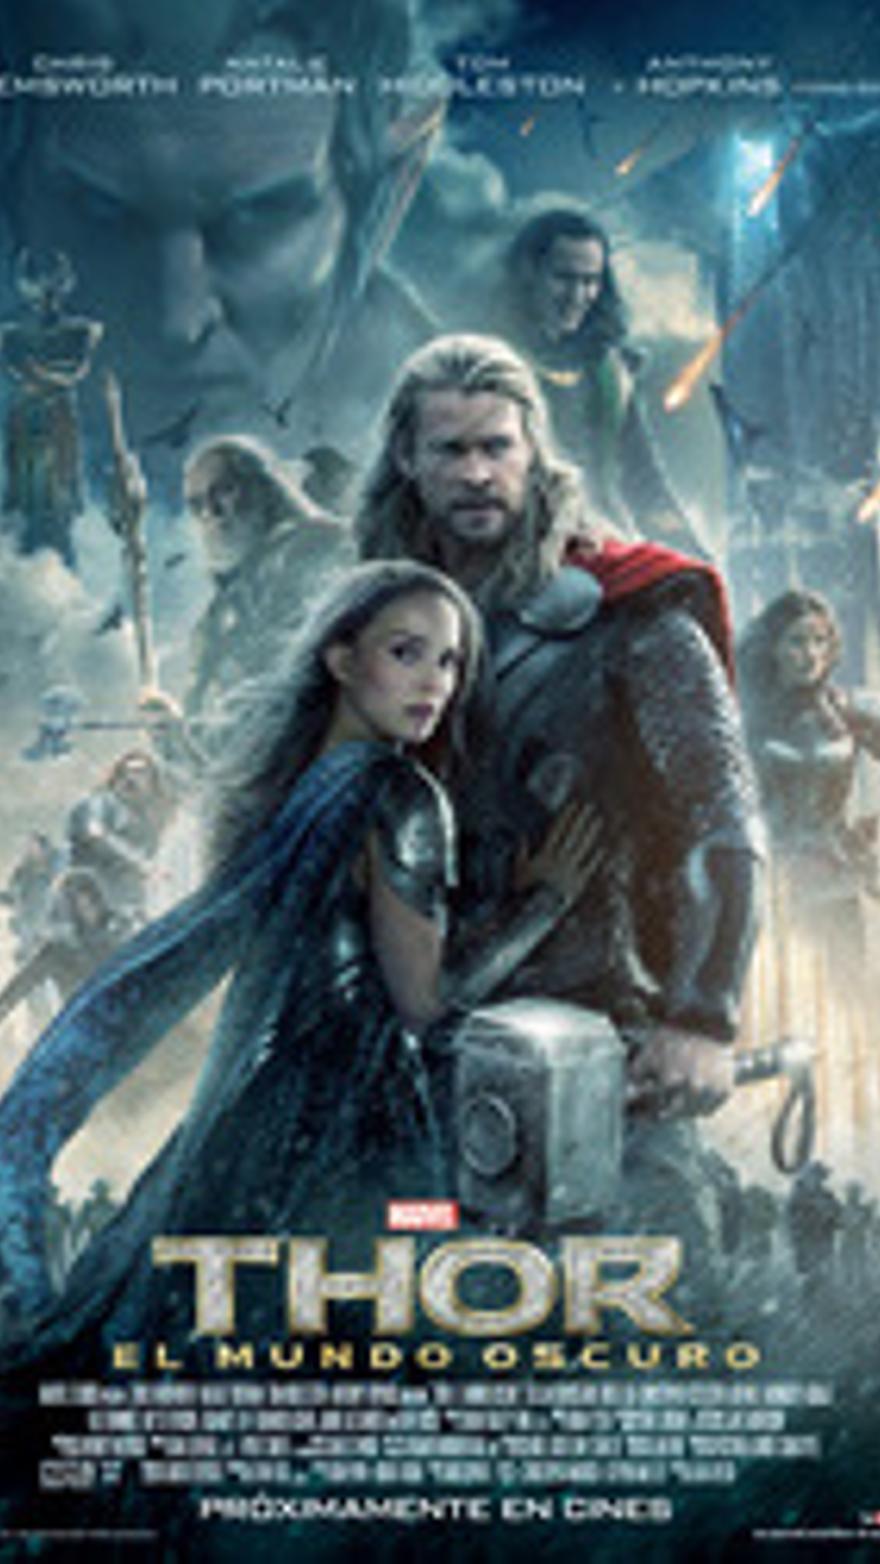 Thor, el mundo oscuro